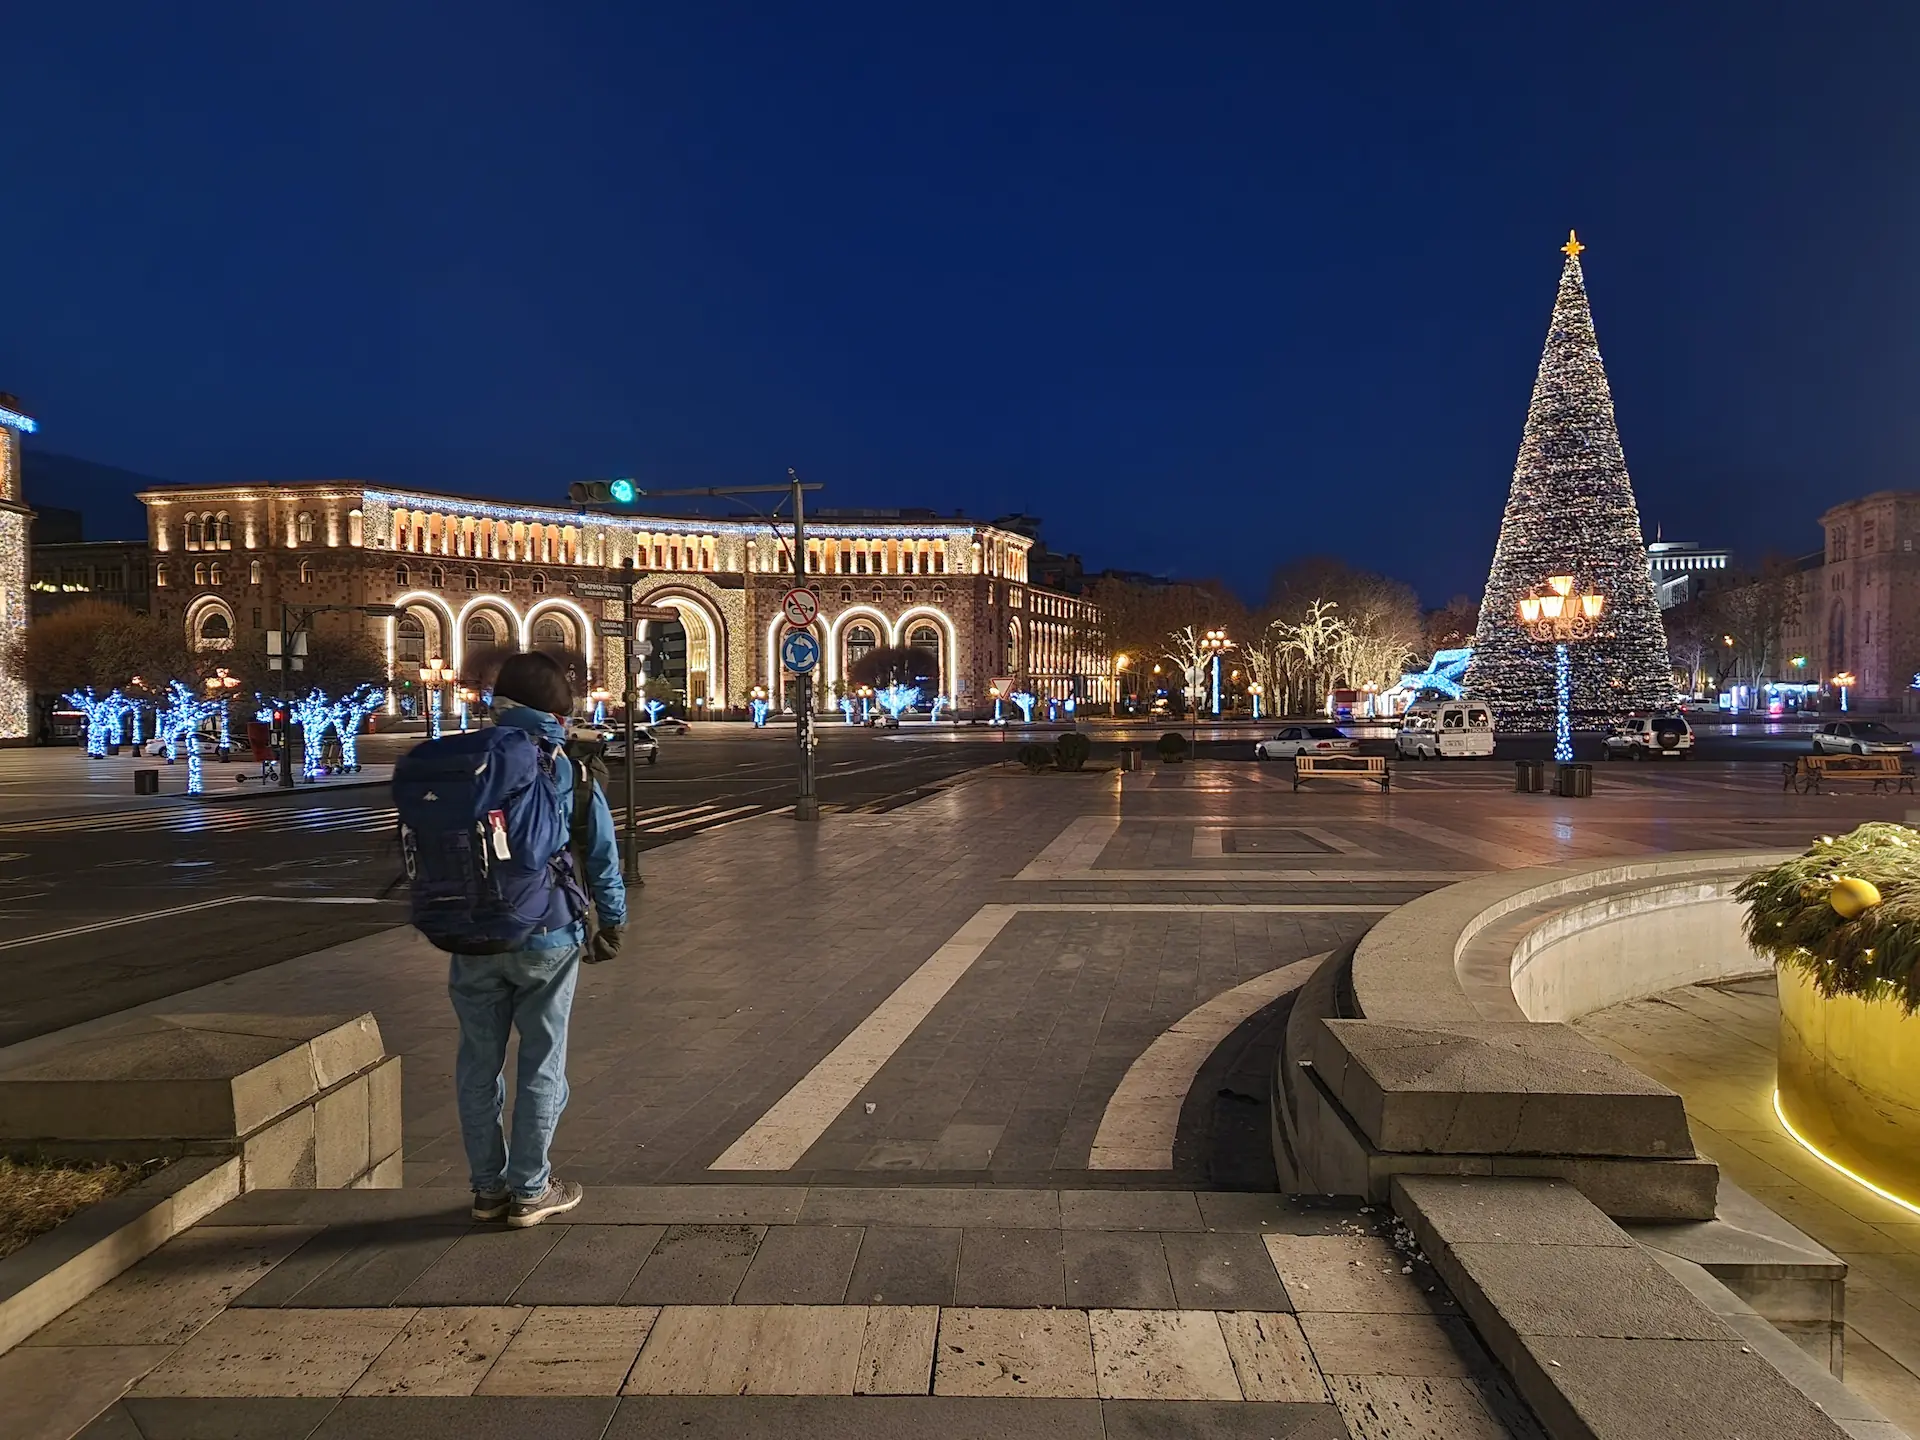 Clara debout sur l'immense place de la République. Le soleil est encore couché, l'éclairage de la place vient des lampadaires et des décorations de Noël.